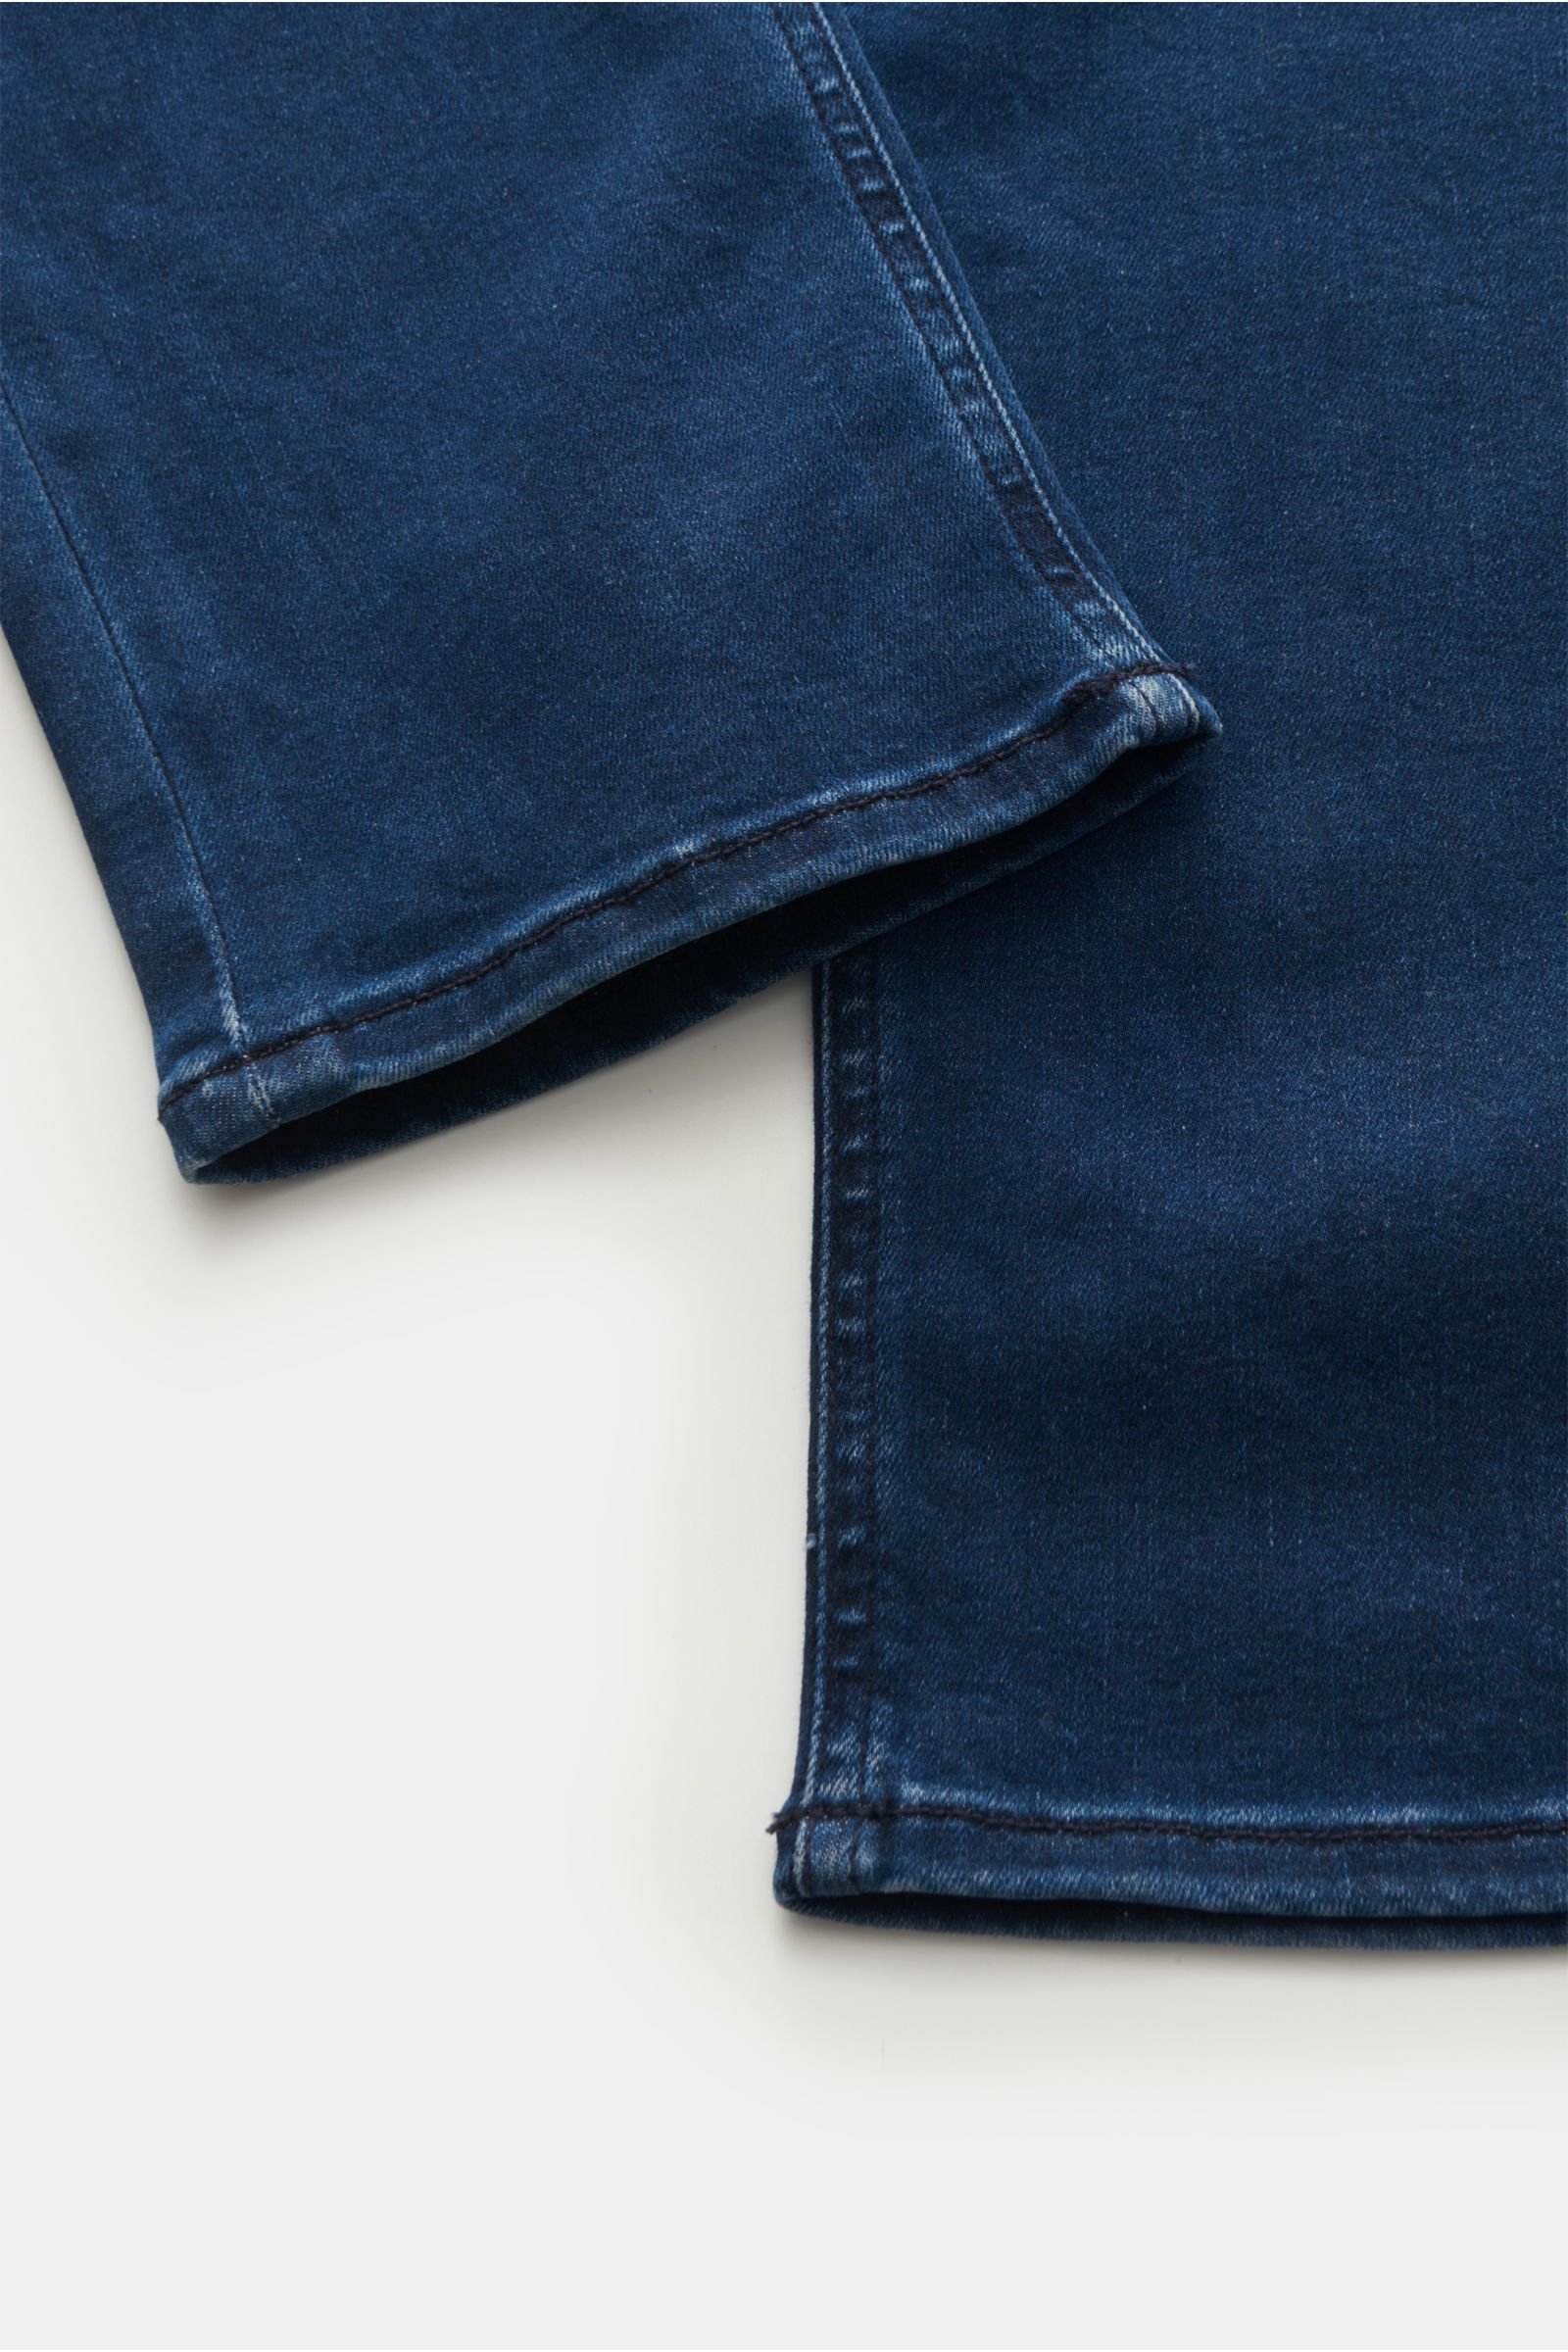 HANDPICKED jeans \'Orvieto\' navy | BRAUN Hamburg